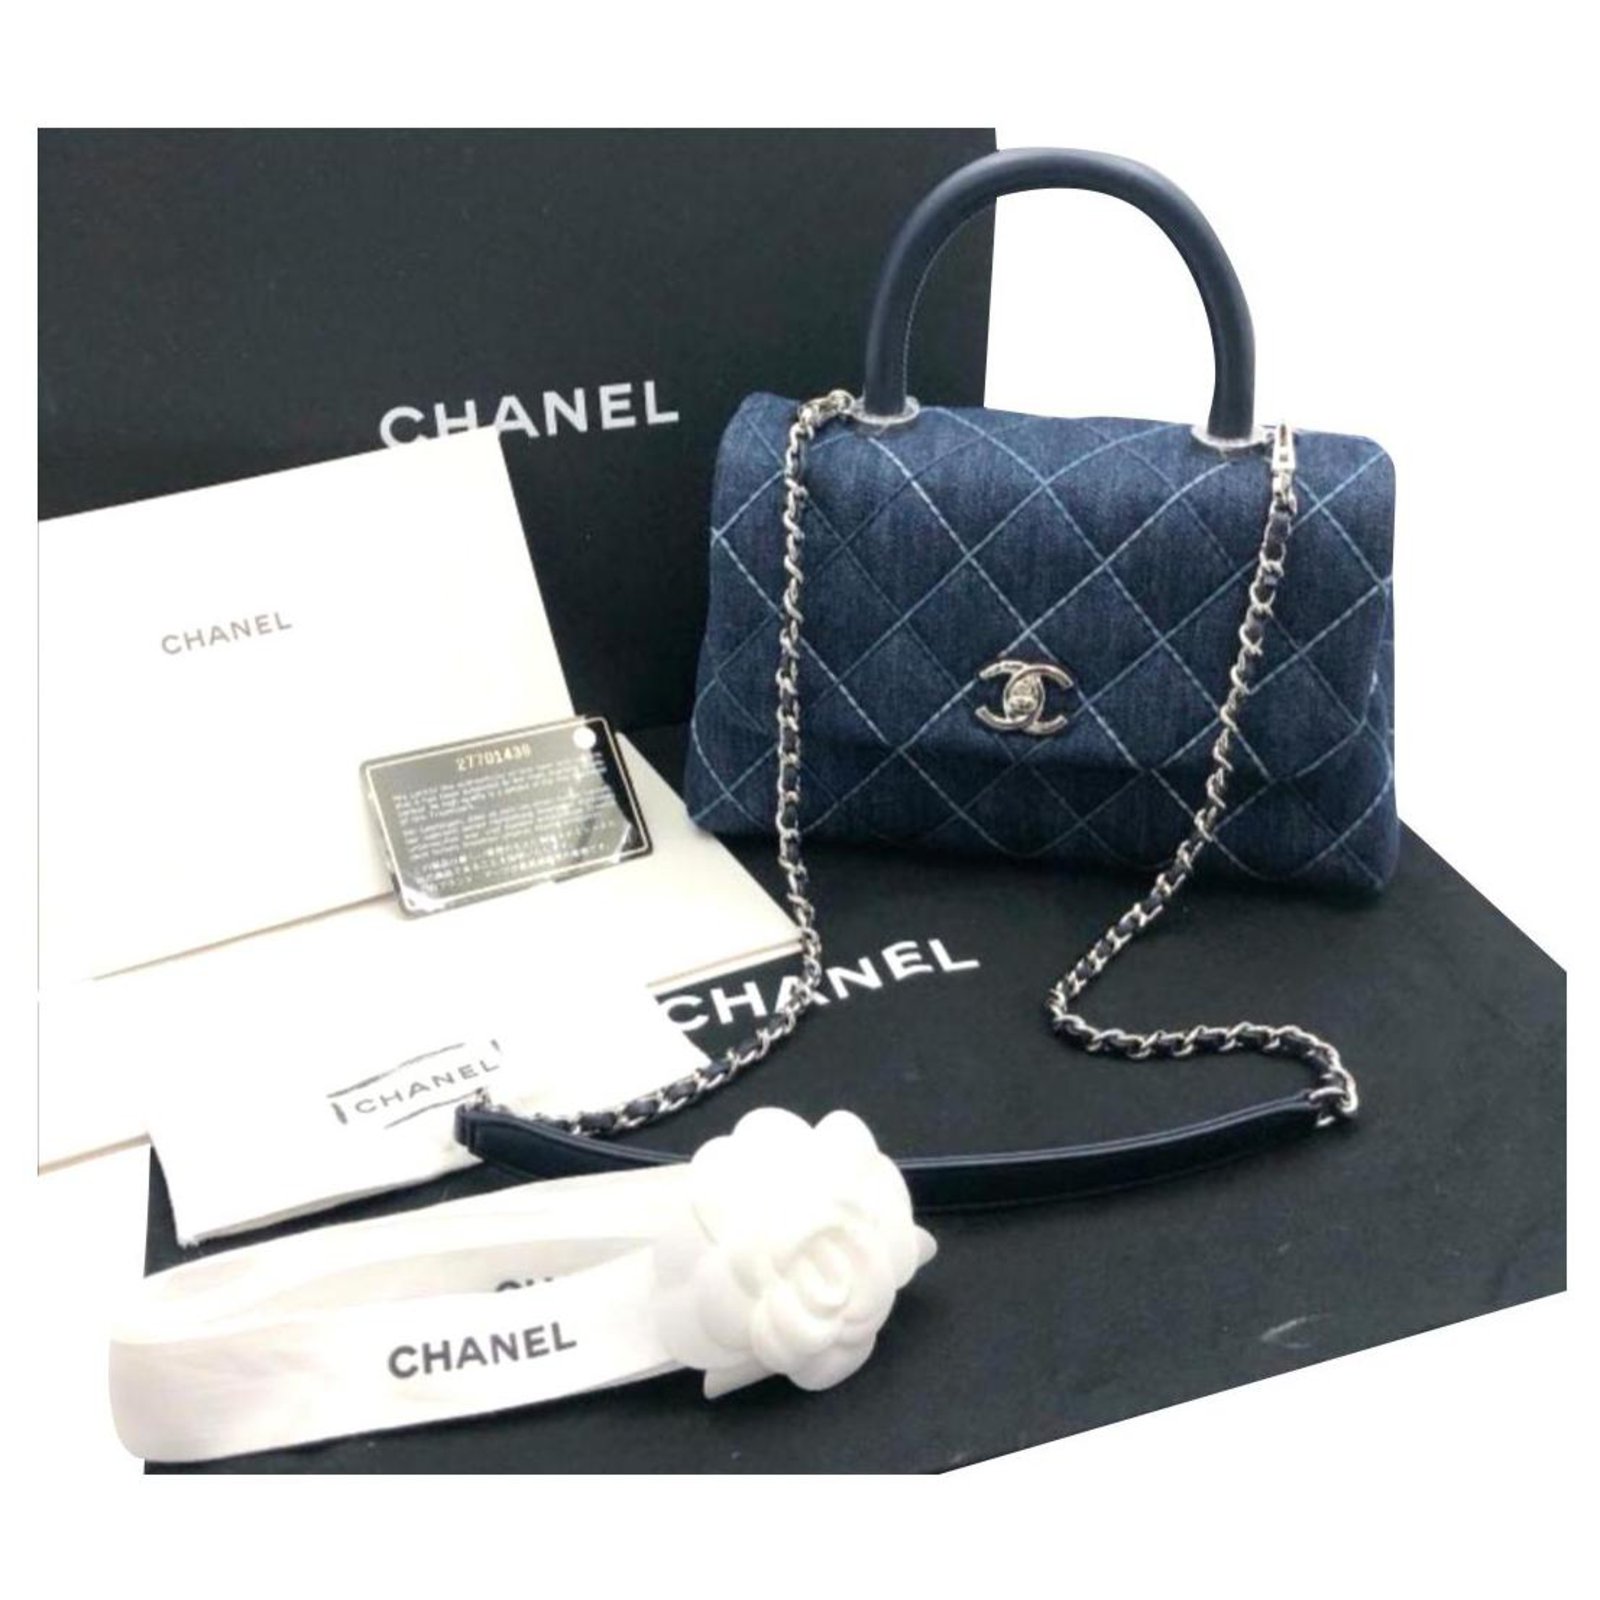 Chanel coco handle bag